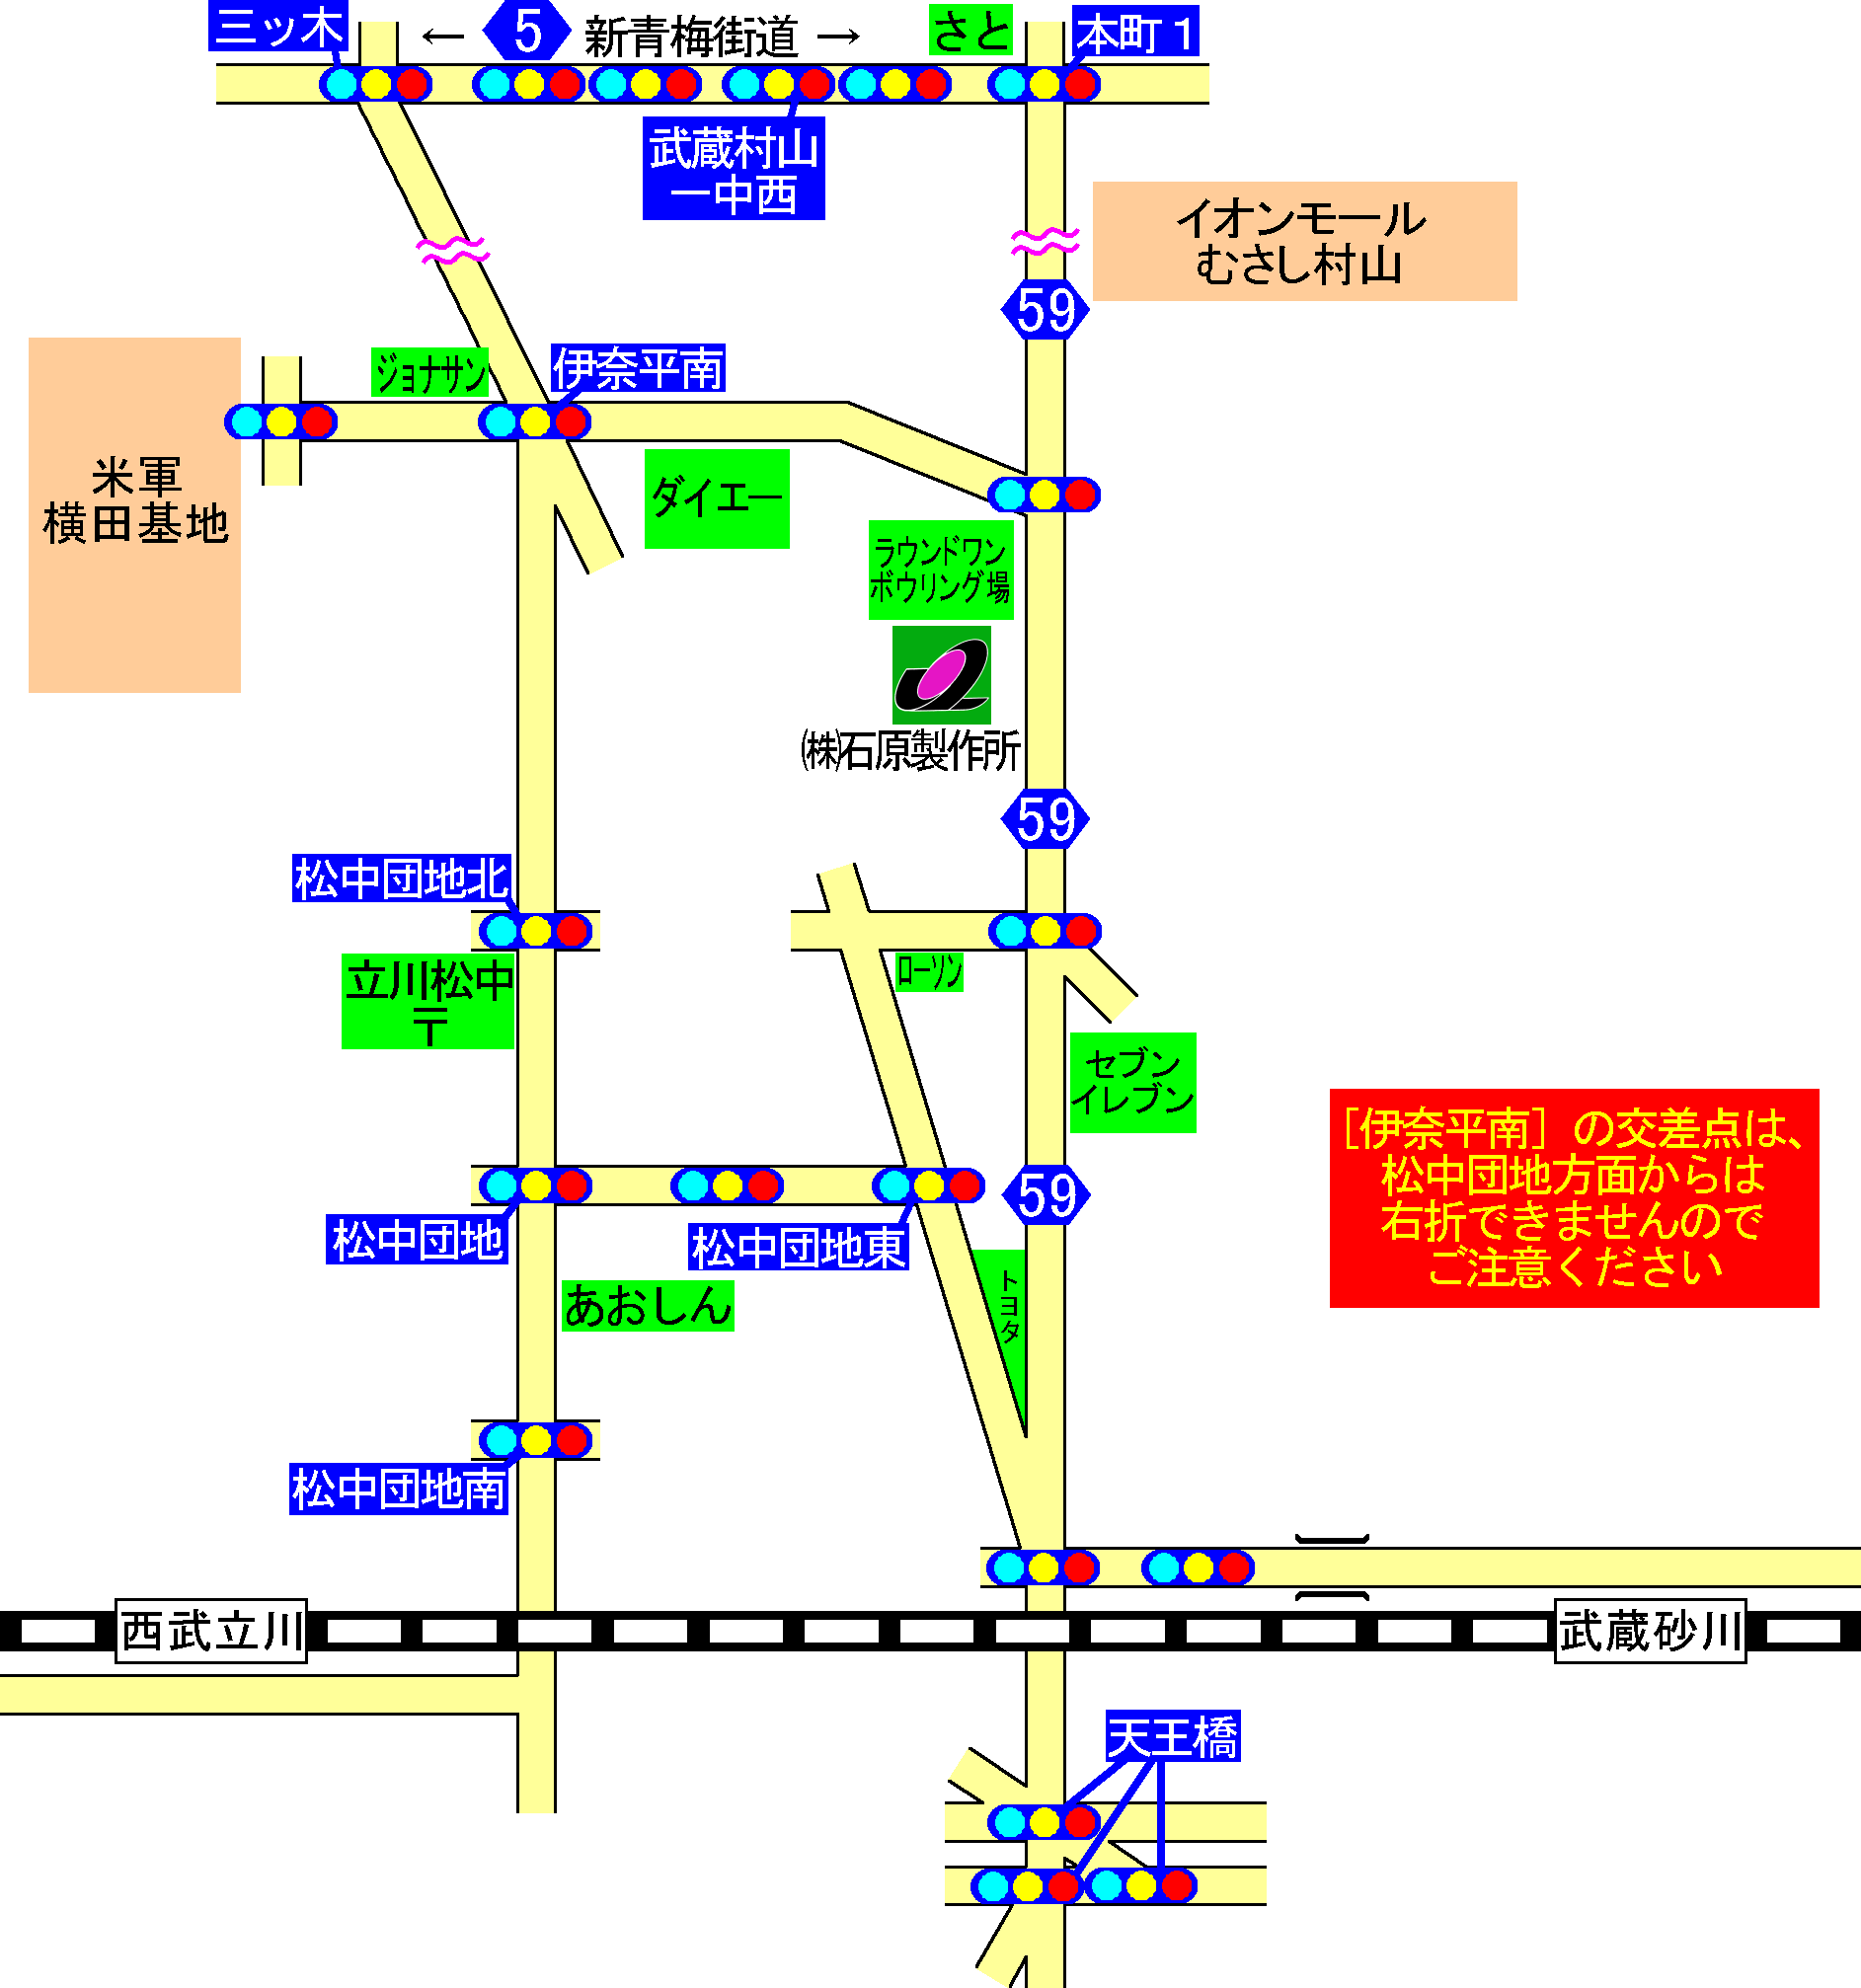 石原SS 案内図(略地図)